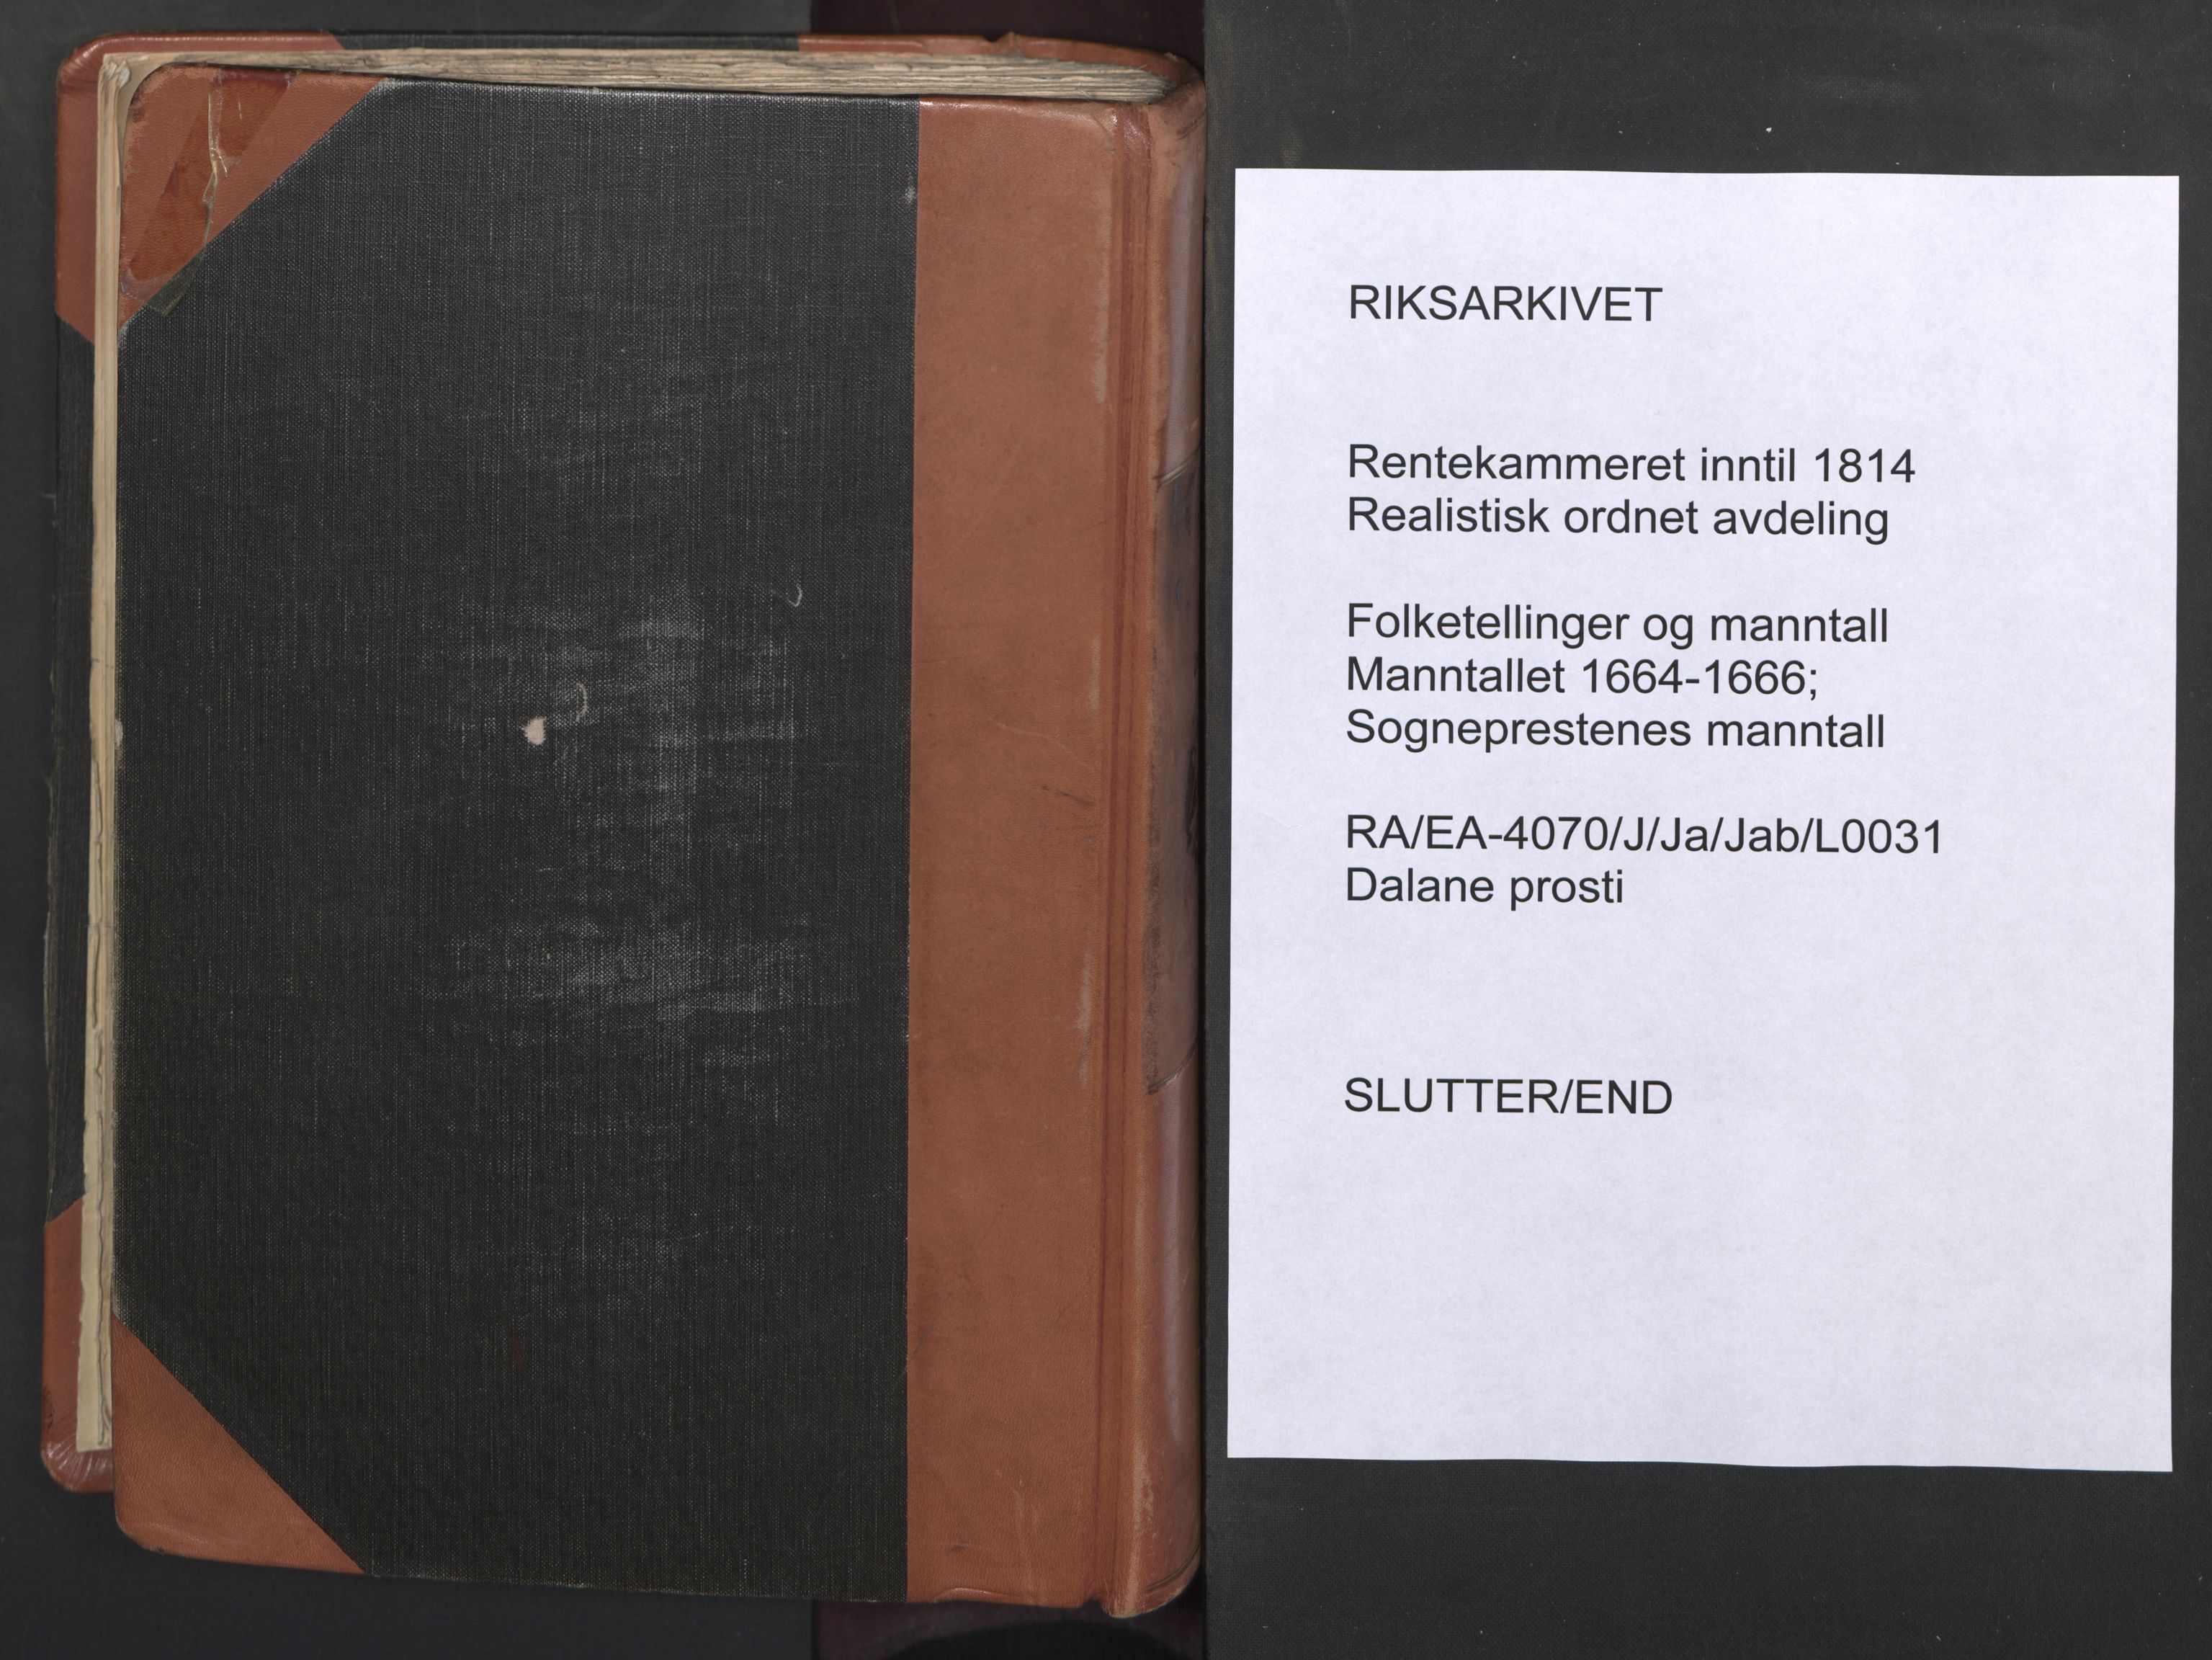 RA, Sogneprestenes manntall 1664-1666, nr. 31: Dalane prosti, 1664-1666